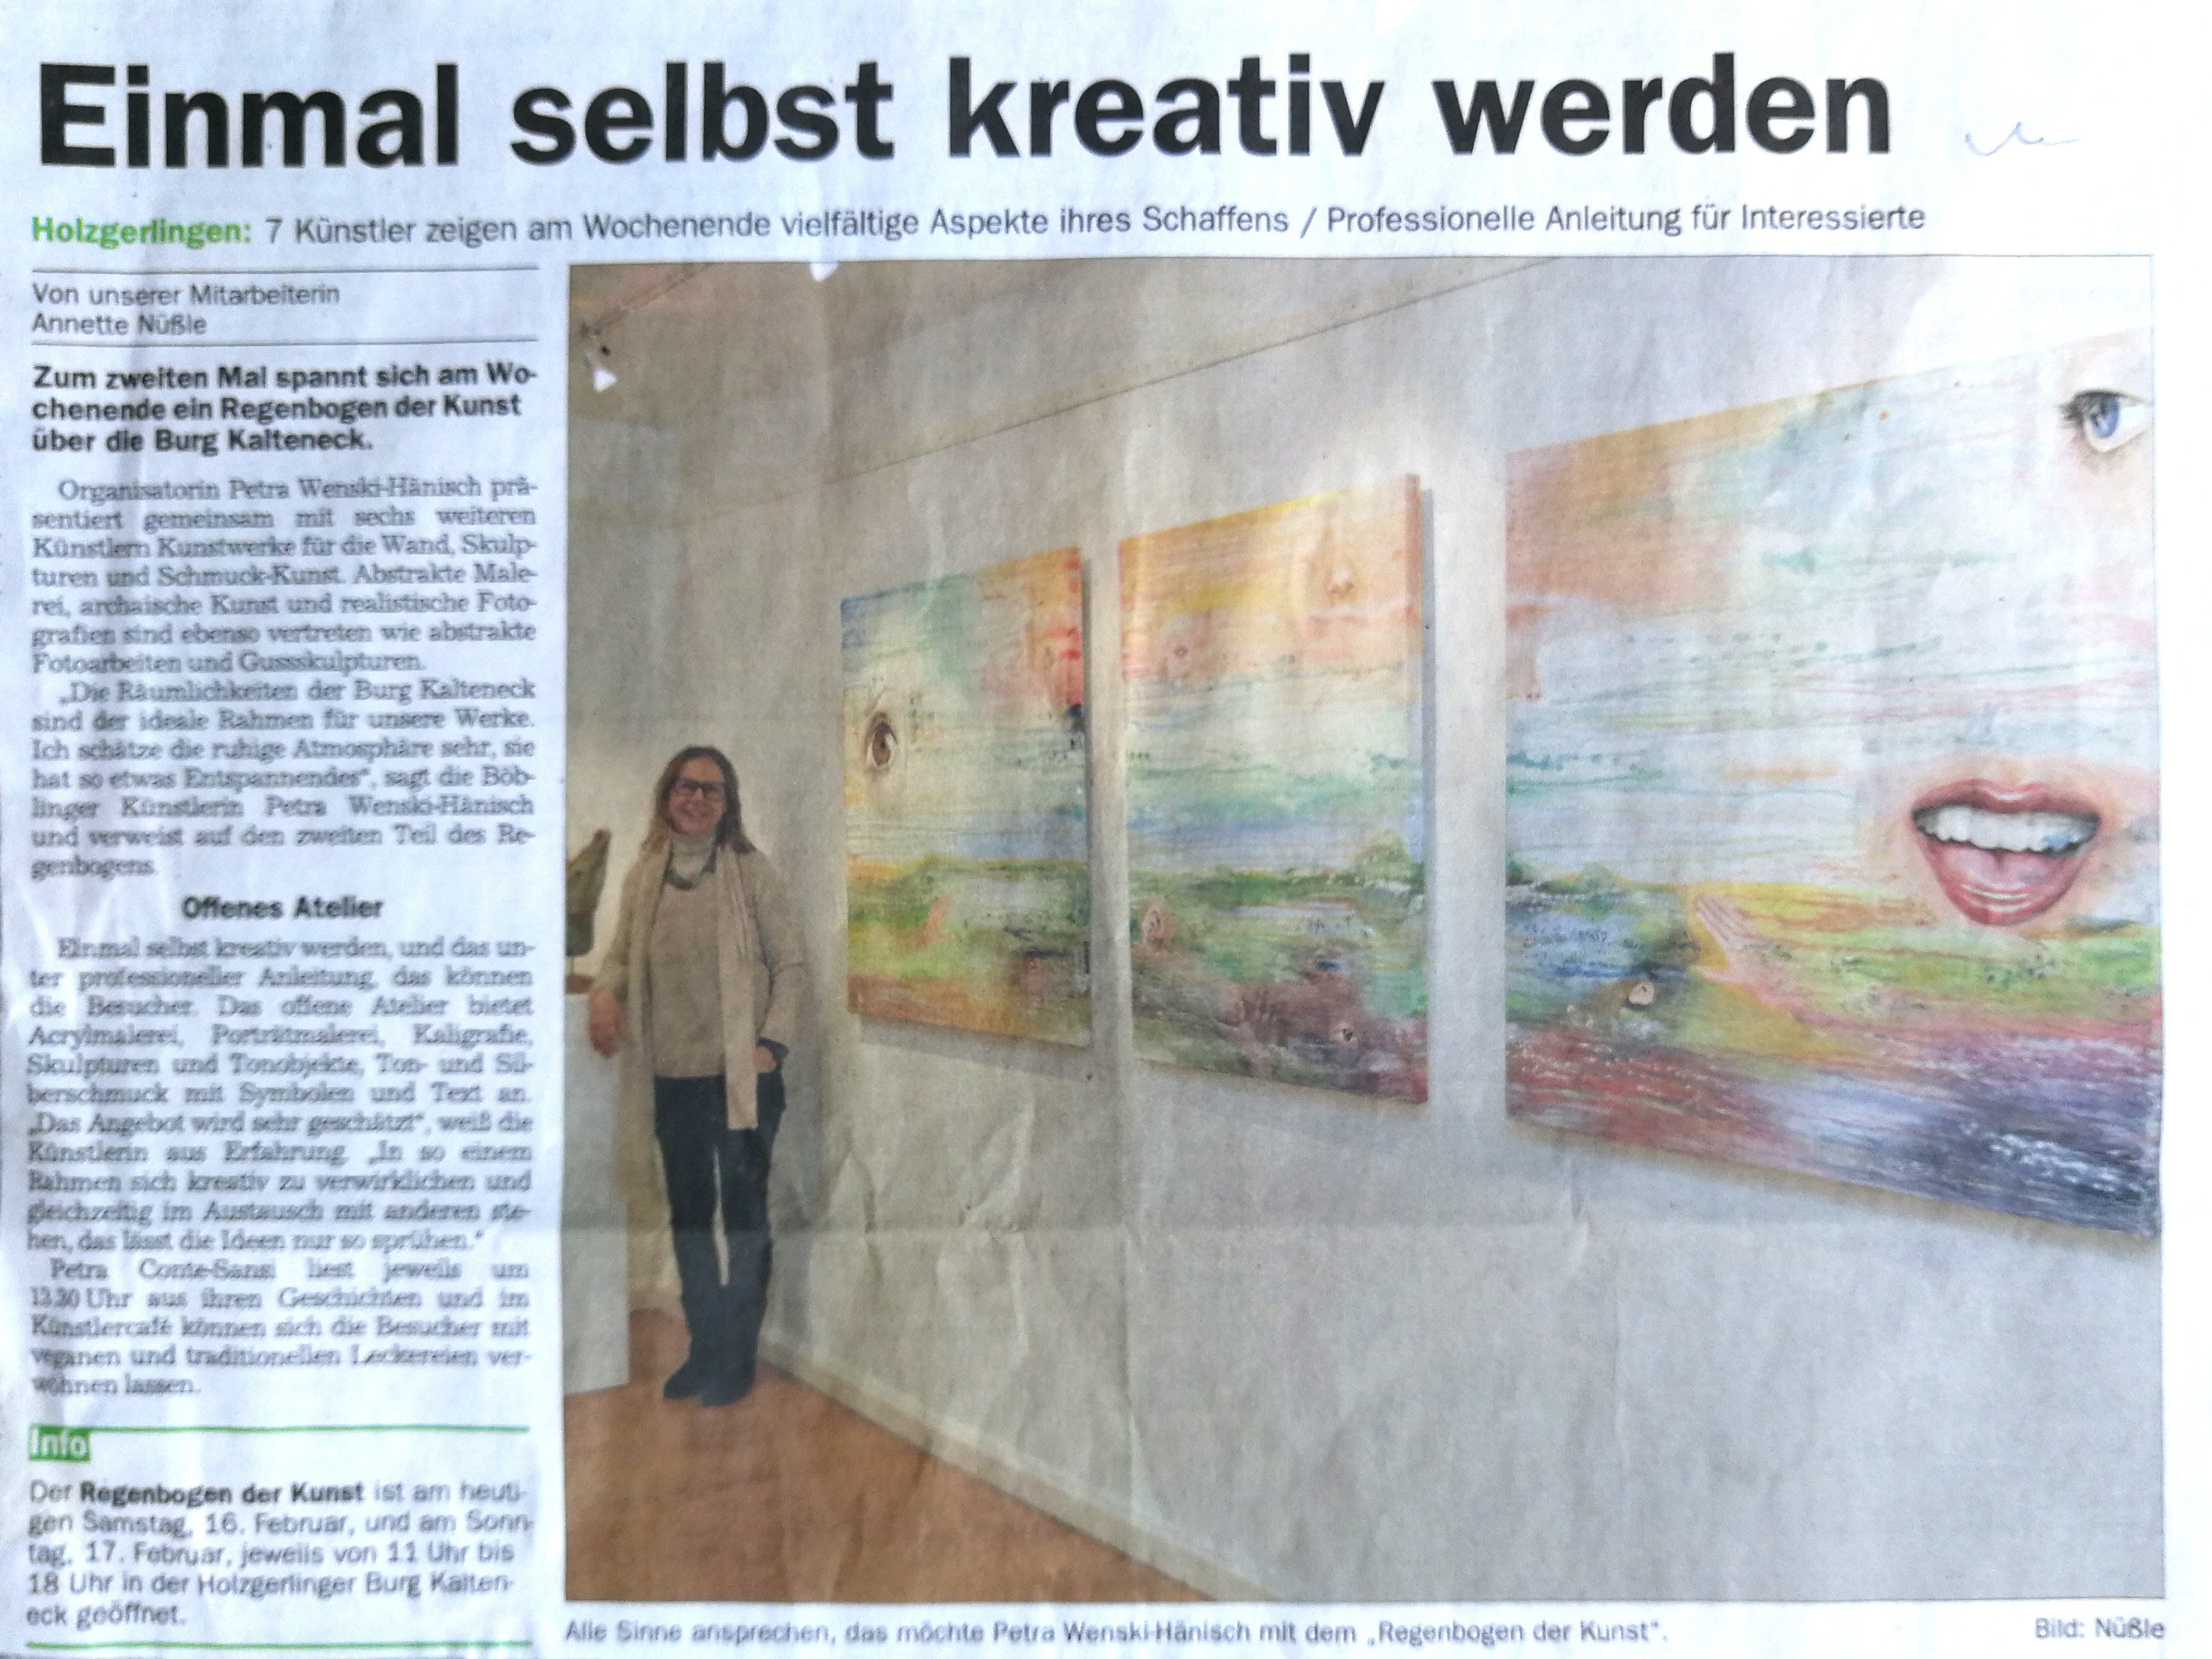 Artikel in der SZ/BZ über die Ausstellung in der Burg Kalteneck im Rahmen des Regenbogen der Kunst 2019.